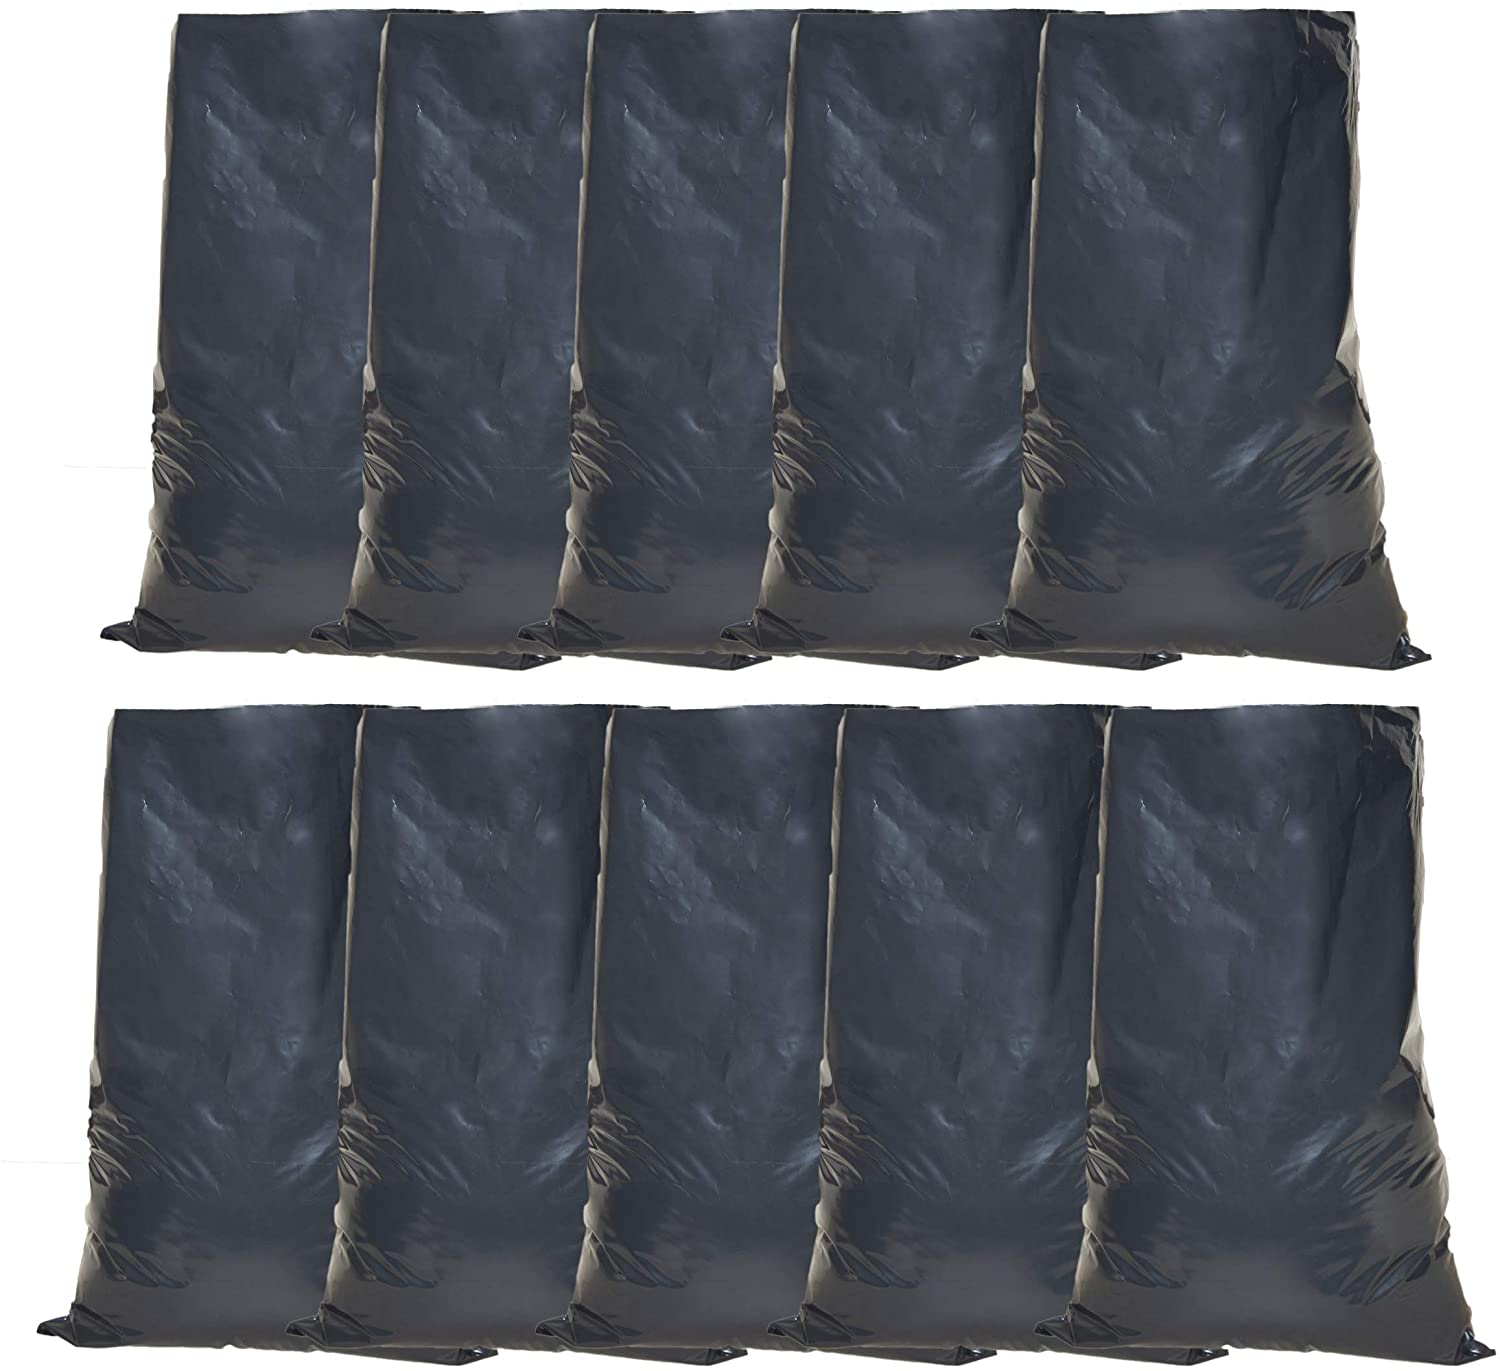 Tools House Heavy Duty Black Rubble Sacks - Refuse Bag